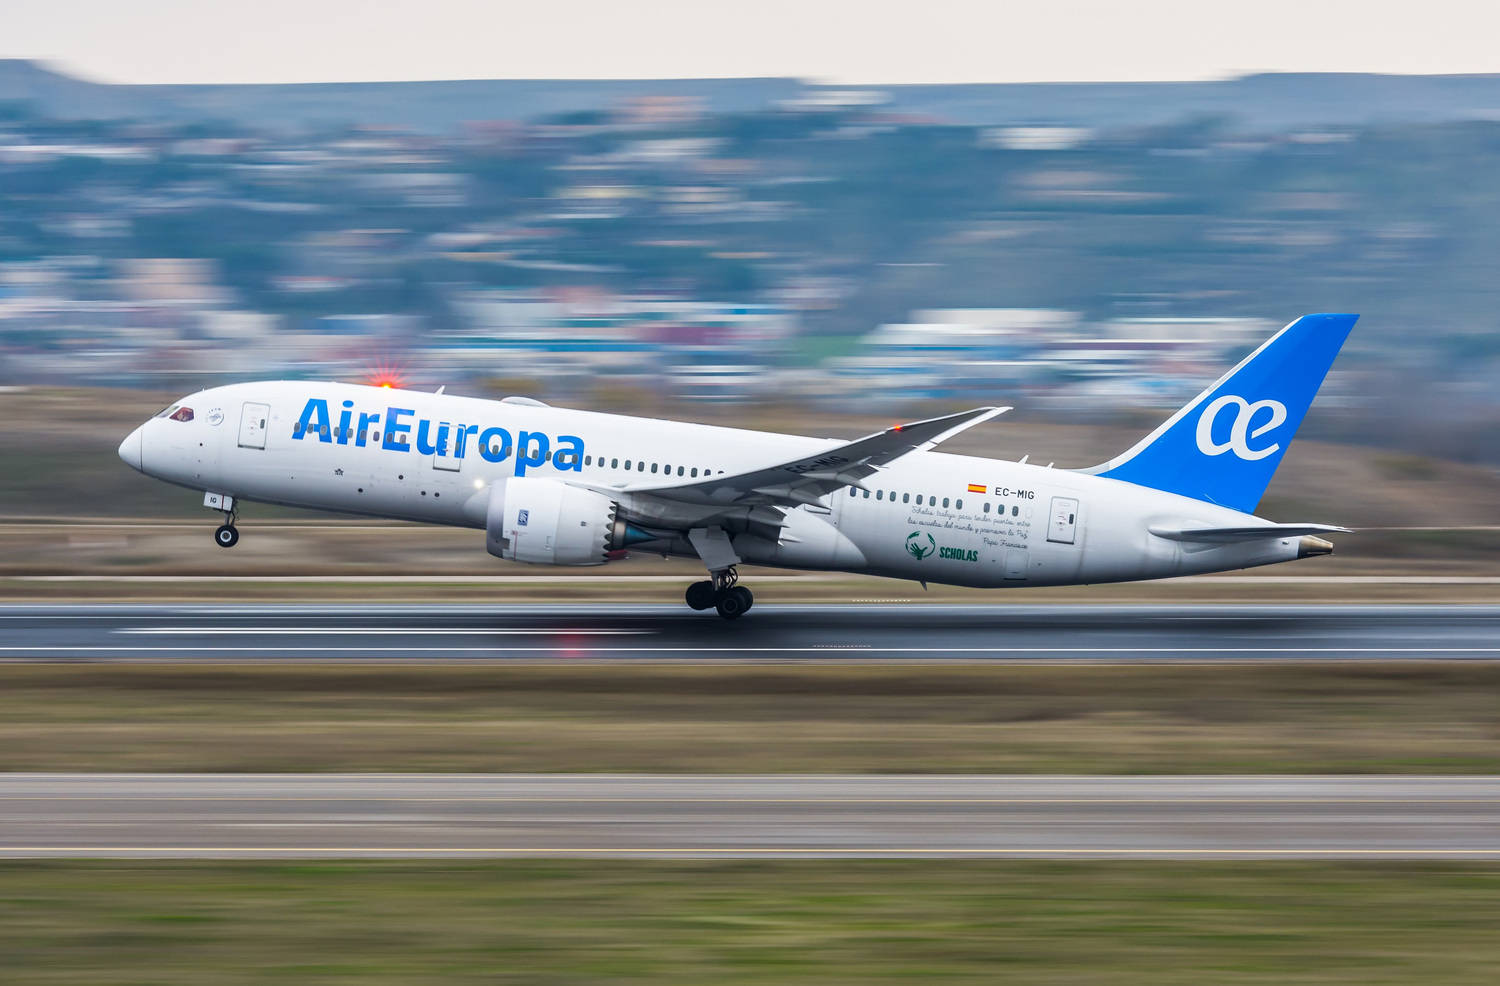 Air Europa: expansão de frota